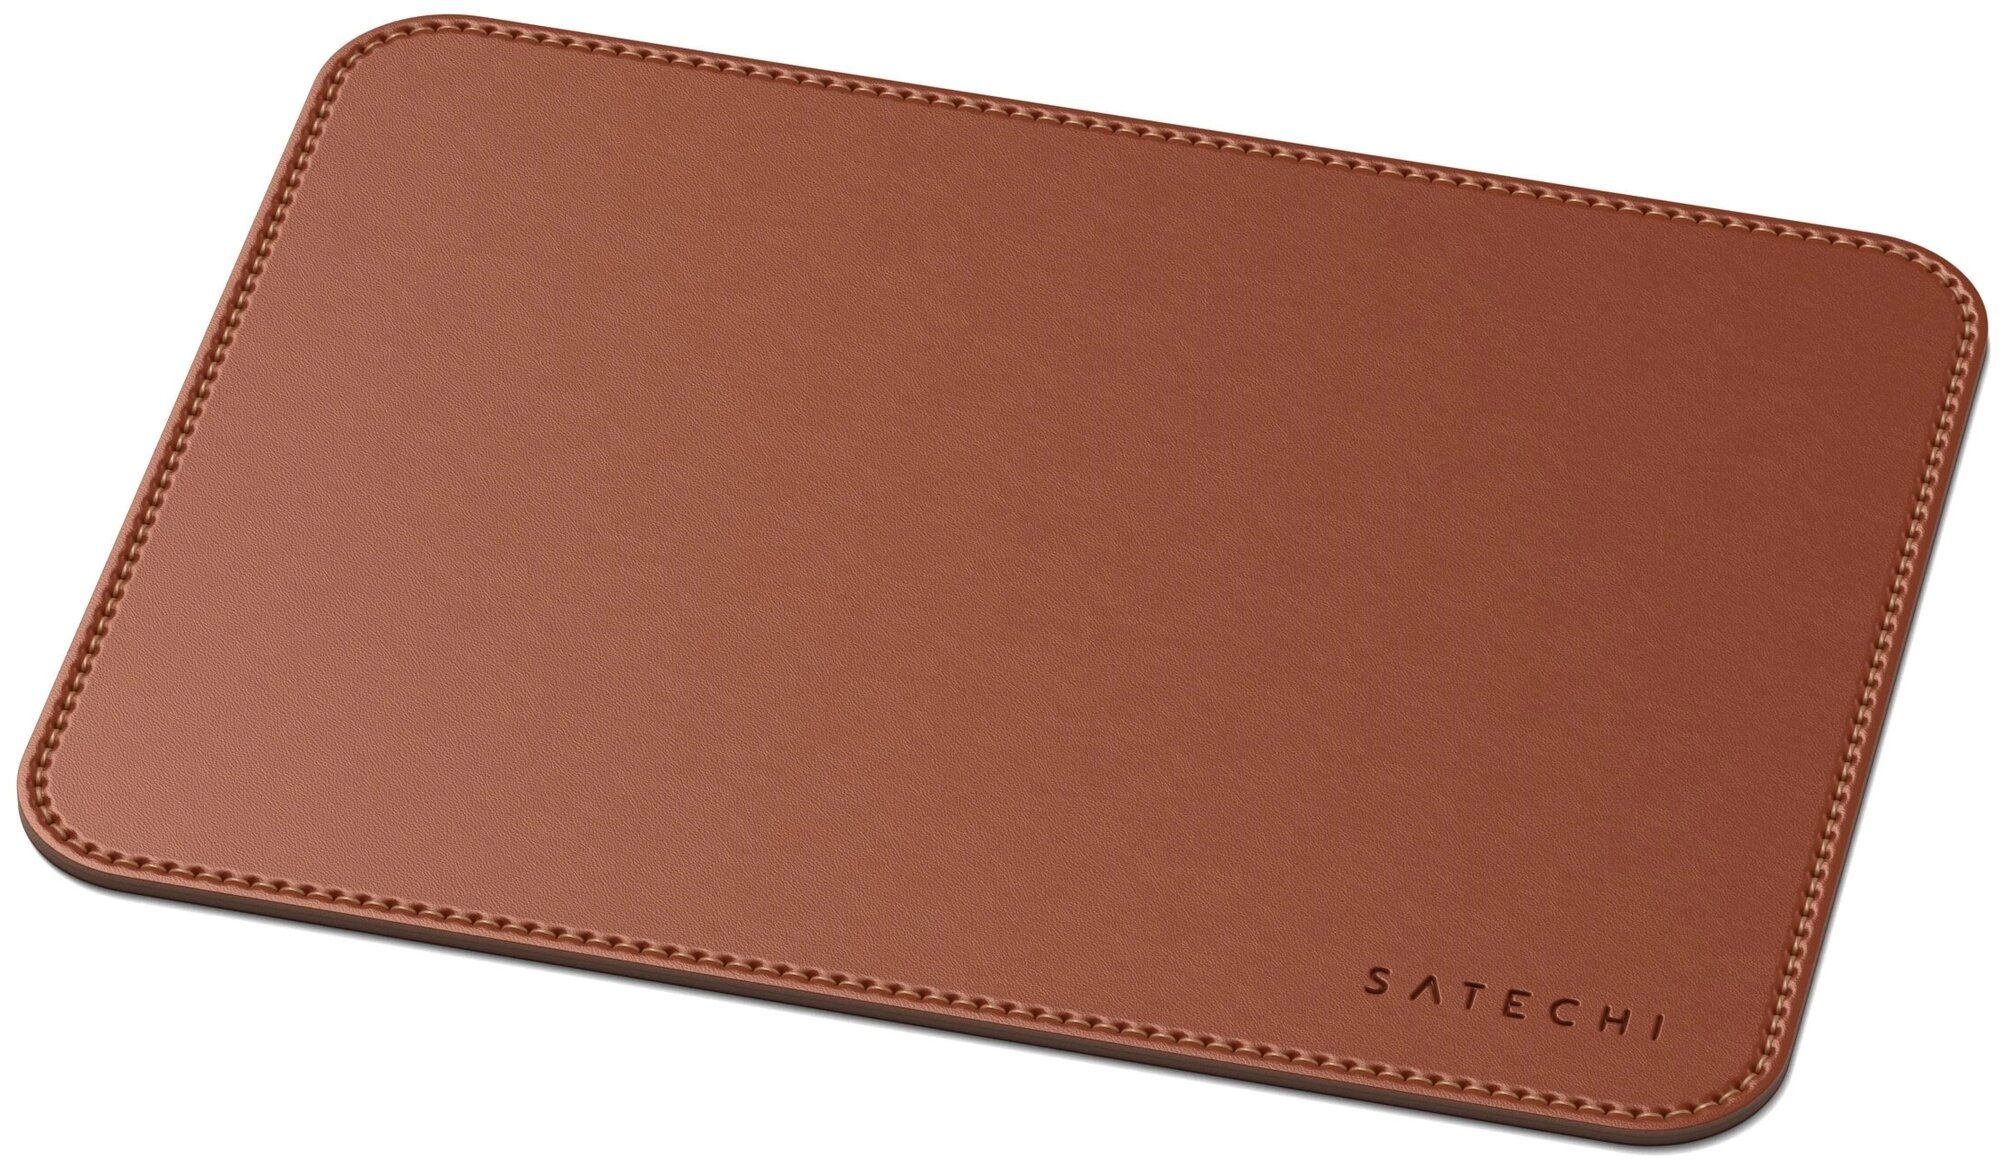 Коврик Satechi Eco Leather Mouse Pad Размер 25 x 19 см. коричневый. коврик satechi aluminum mouse pad